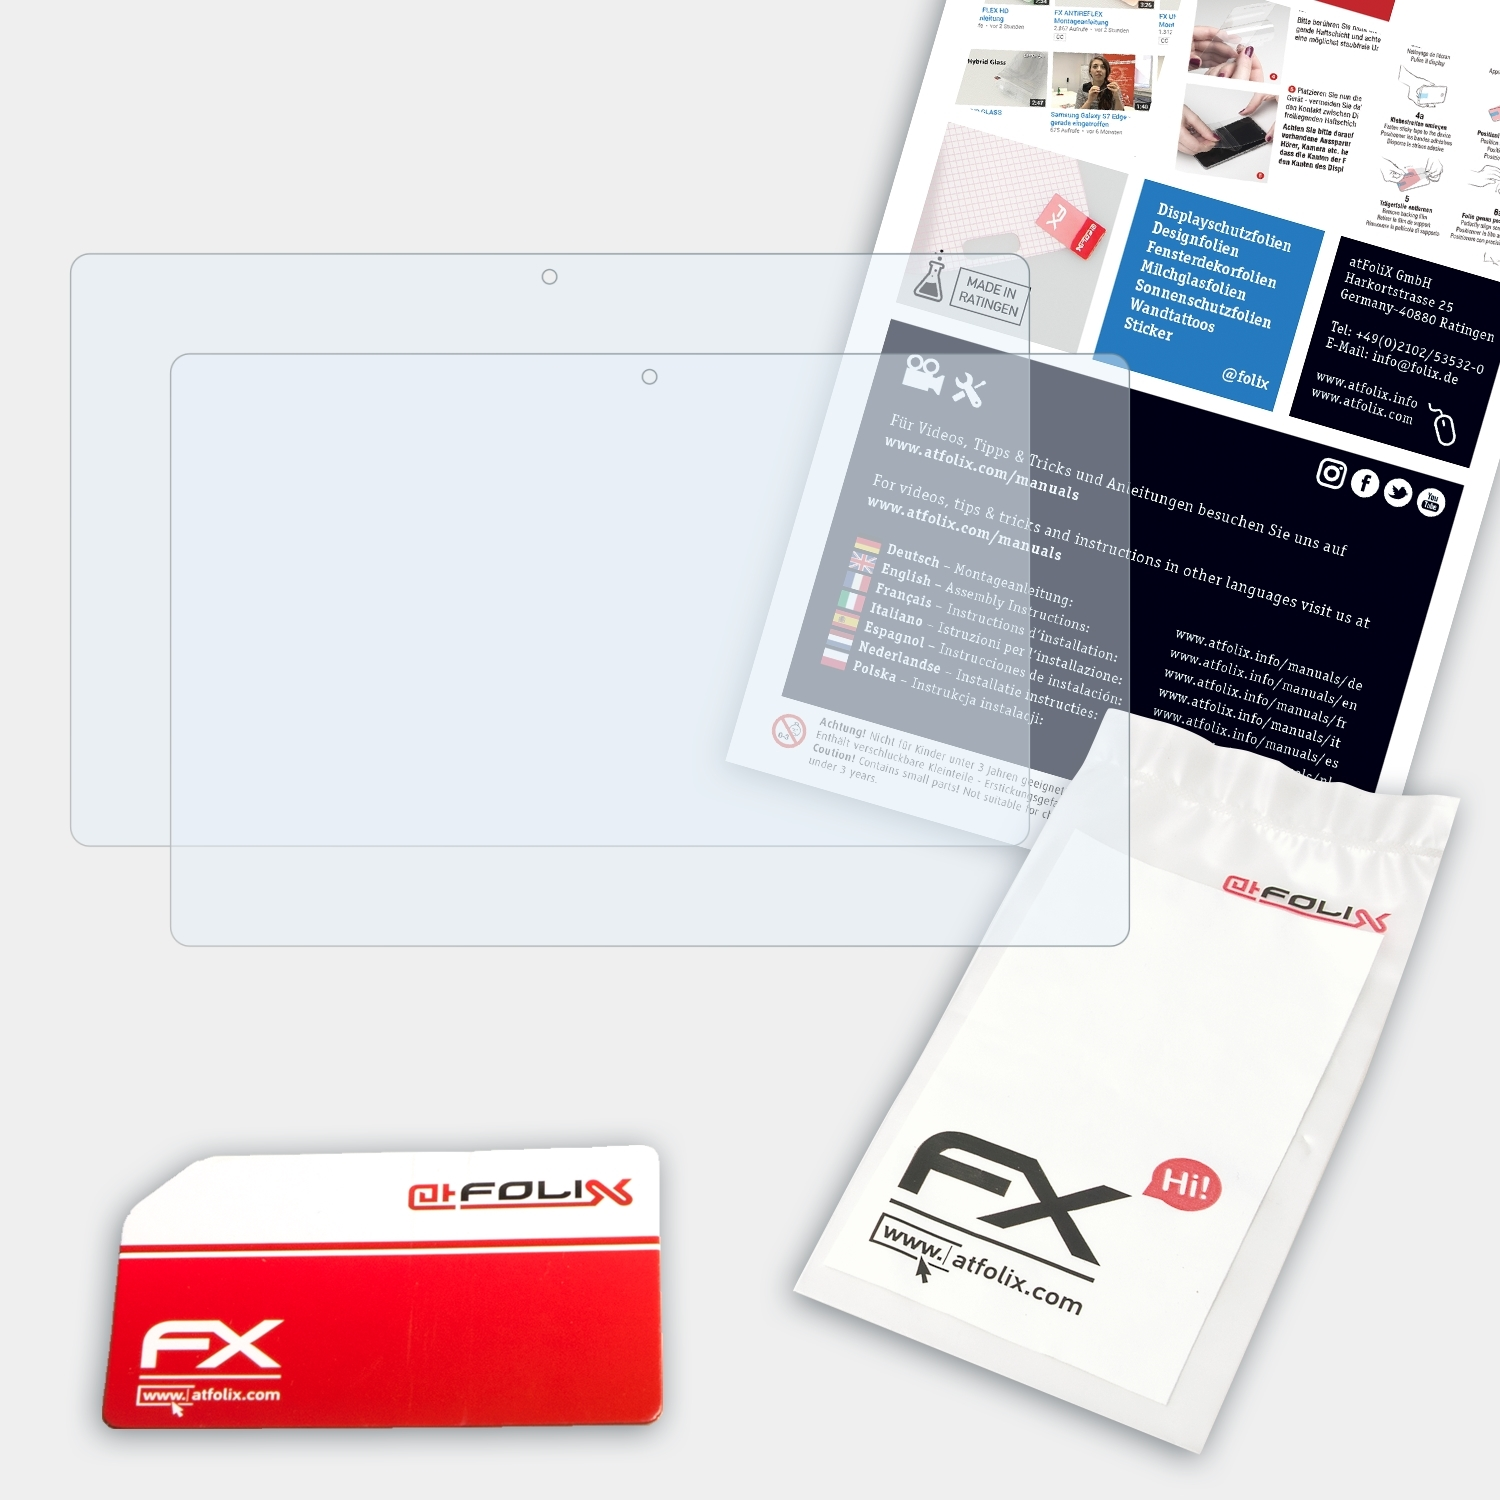 ATFOLIX 2x FX-Clear Displayschutz(für EasyNote Packard-Bell ME)